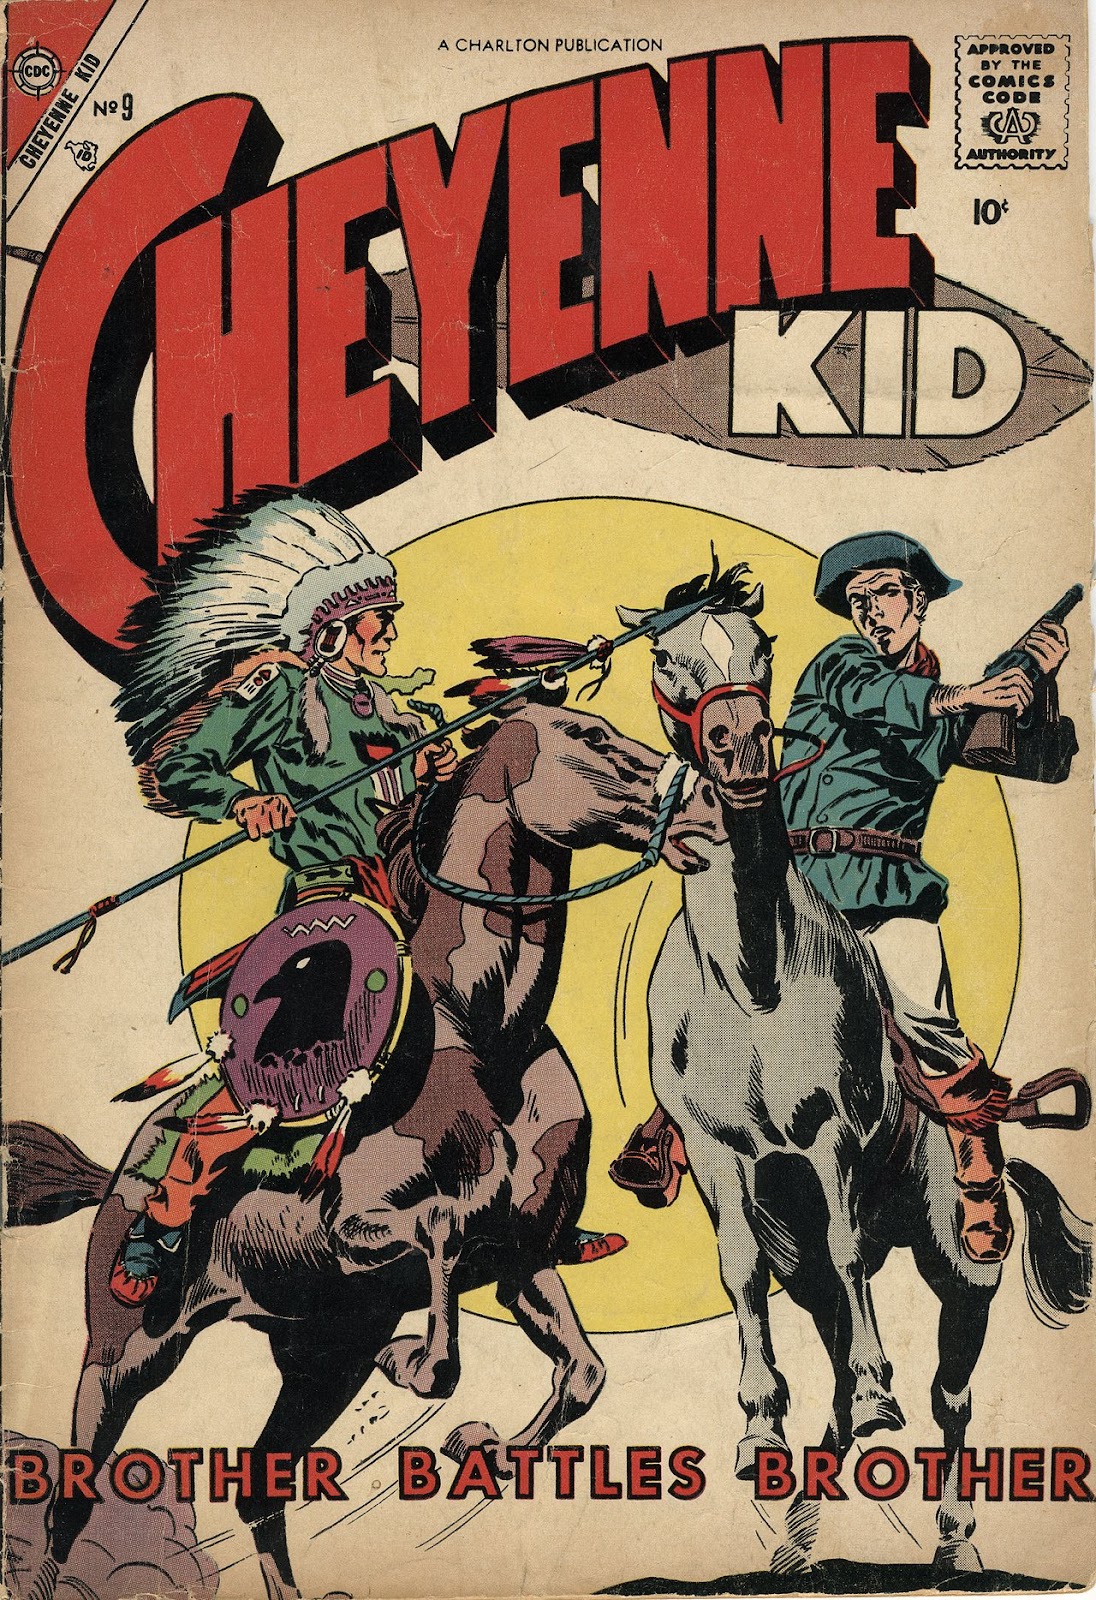 Cheyenne Kid issue 9 - Page 1